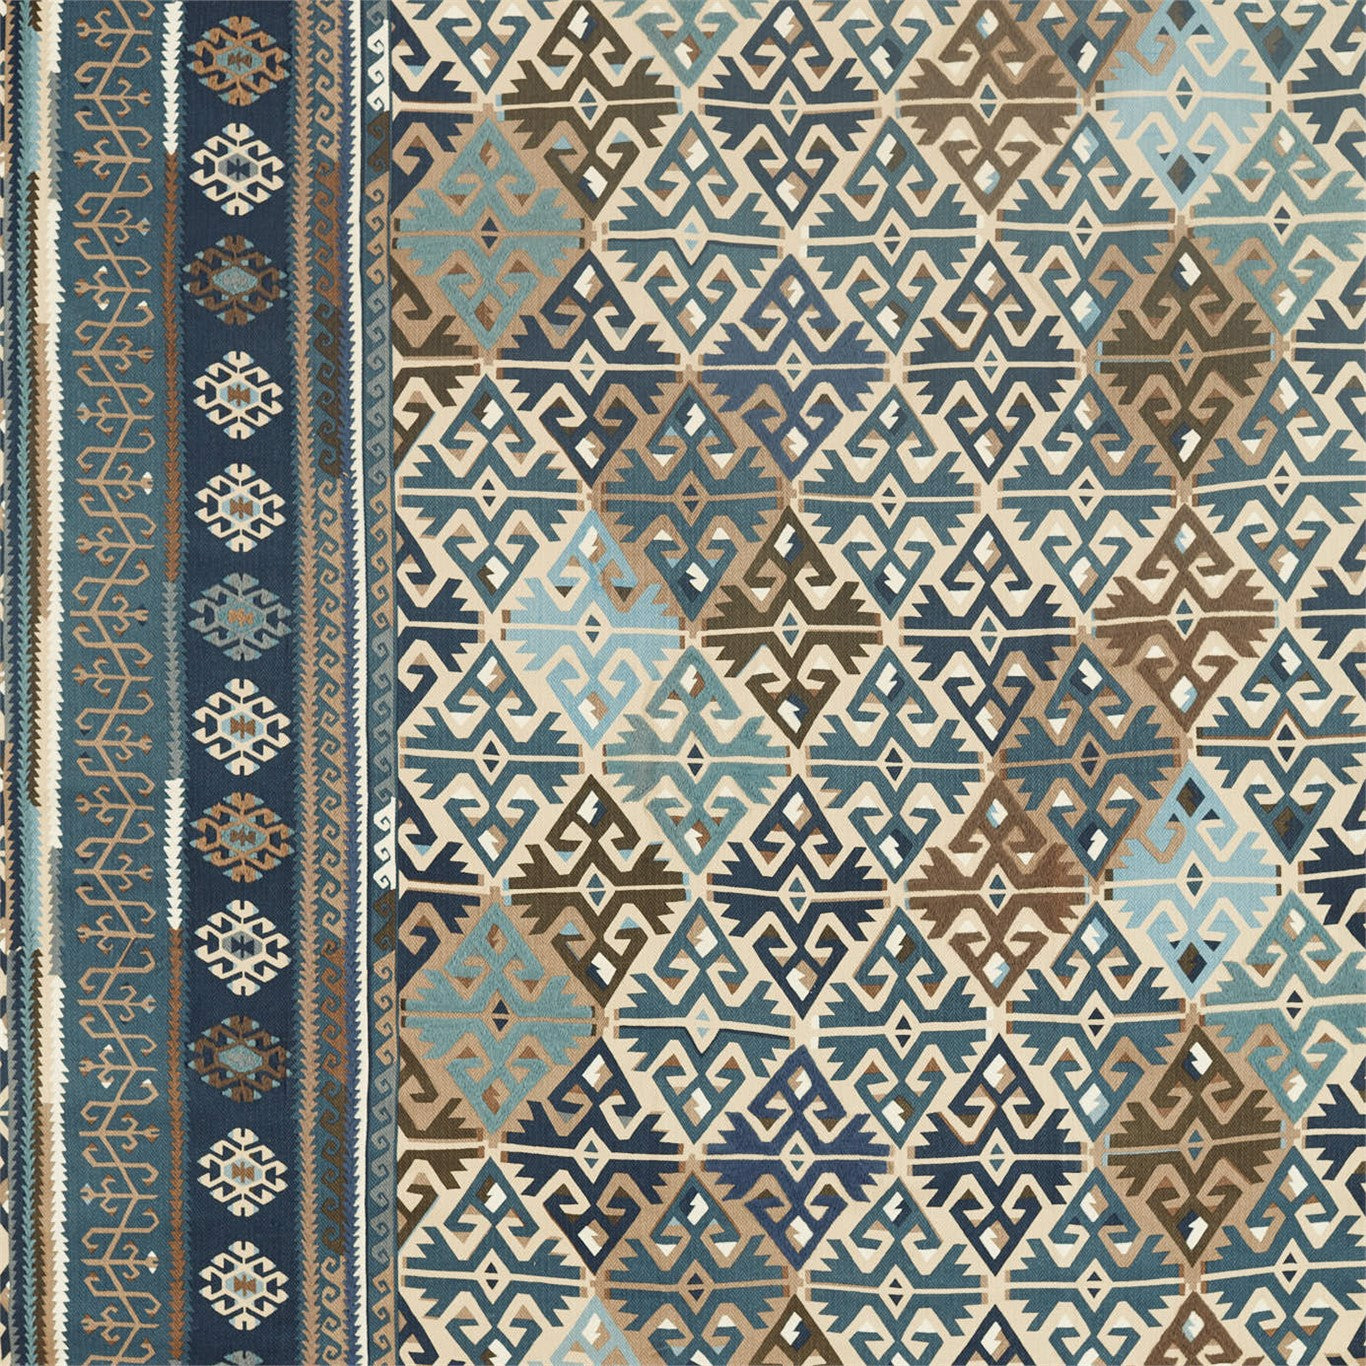 Burdock & Star Fabric by Morris & Co. - DMA4236519 - Indigo